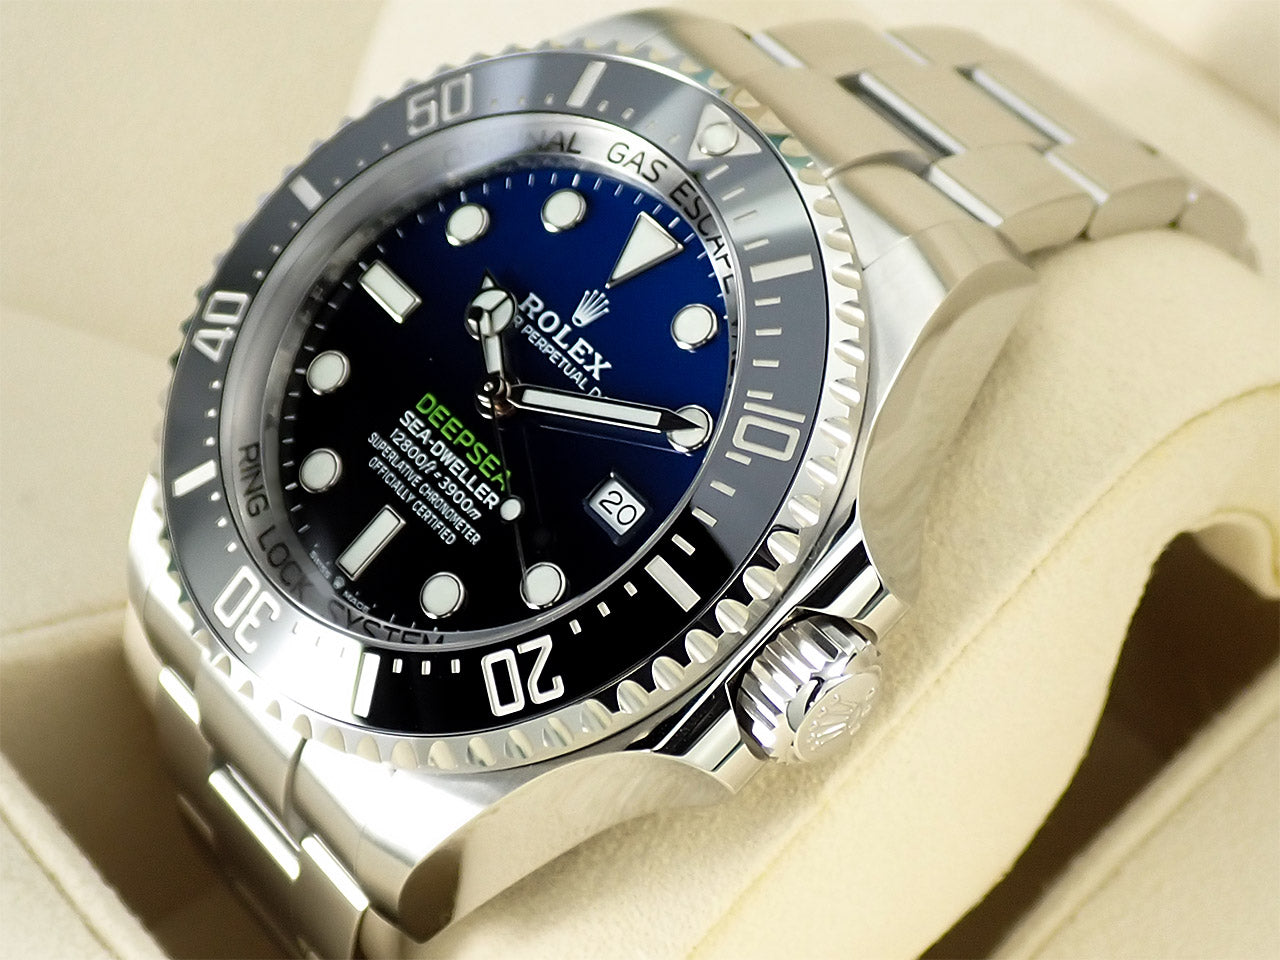 Rolex Sea-Dweller Deepsea D-BLUE &lt;Warranty, Box, etc.&gt;